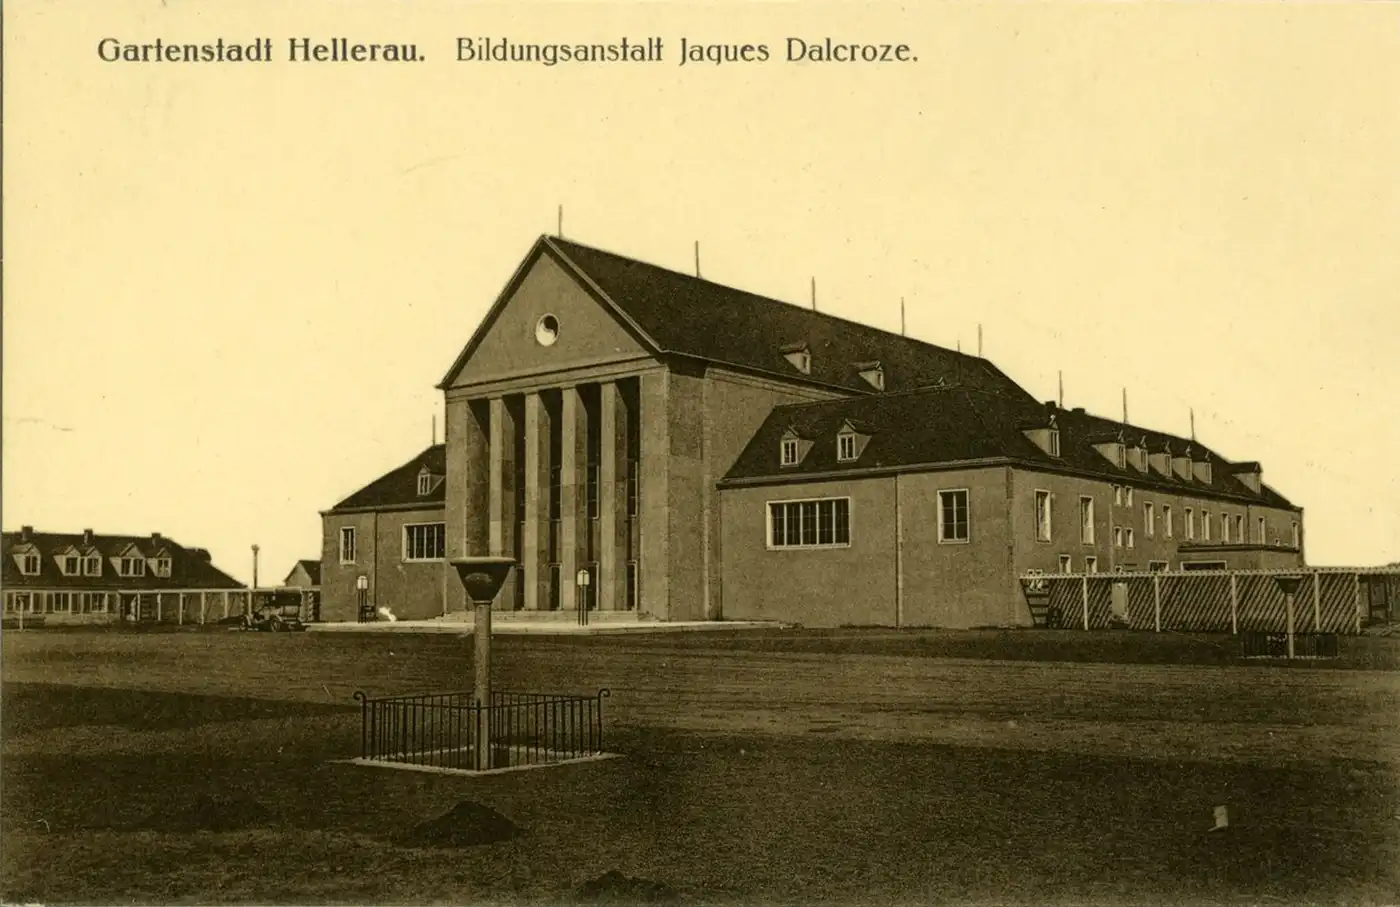 Cartolina con veduta dello Festspielhaus di Hellerau, 1912, Editore Schule-Brück & Sohn.